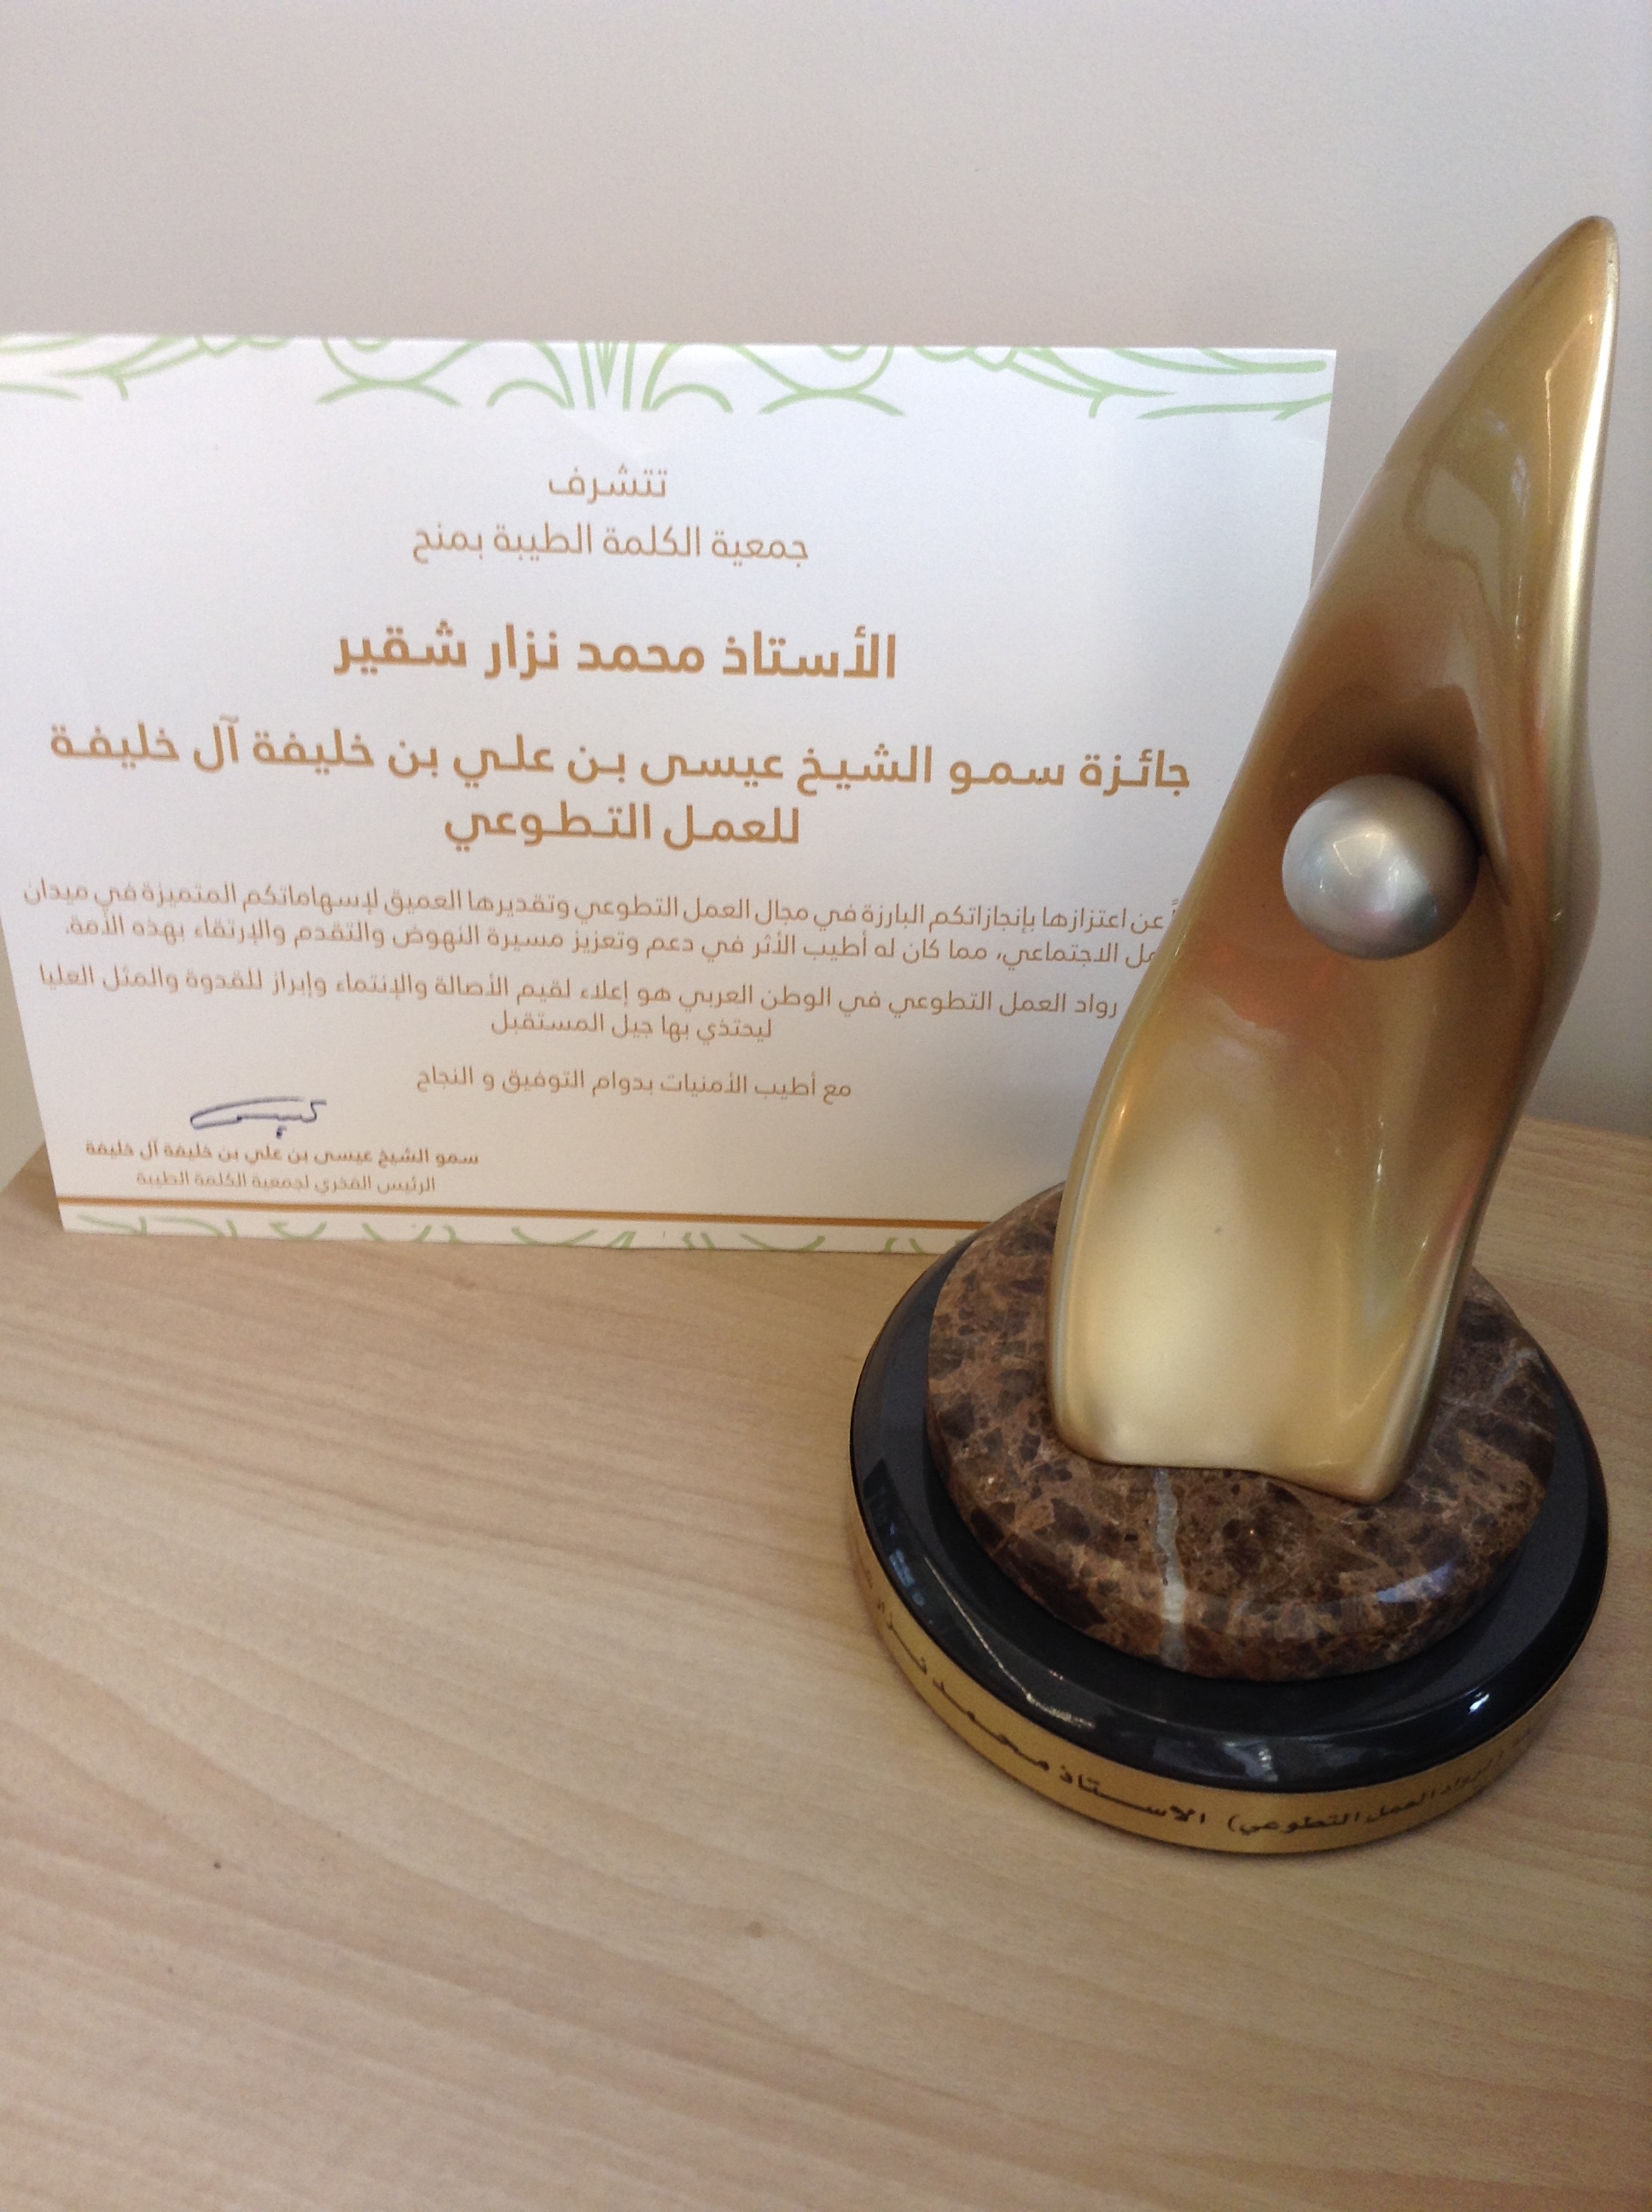 الرئيس شقير يفوز بجائزة الشيخ عيسى آل خليفة لرواد العمل التطوعي العربي